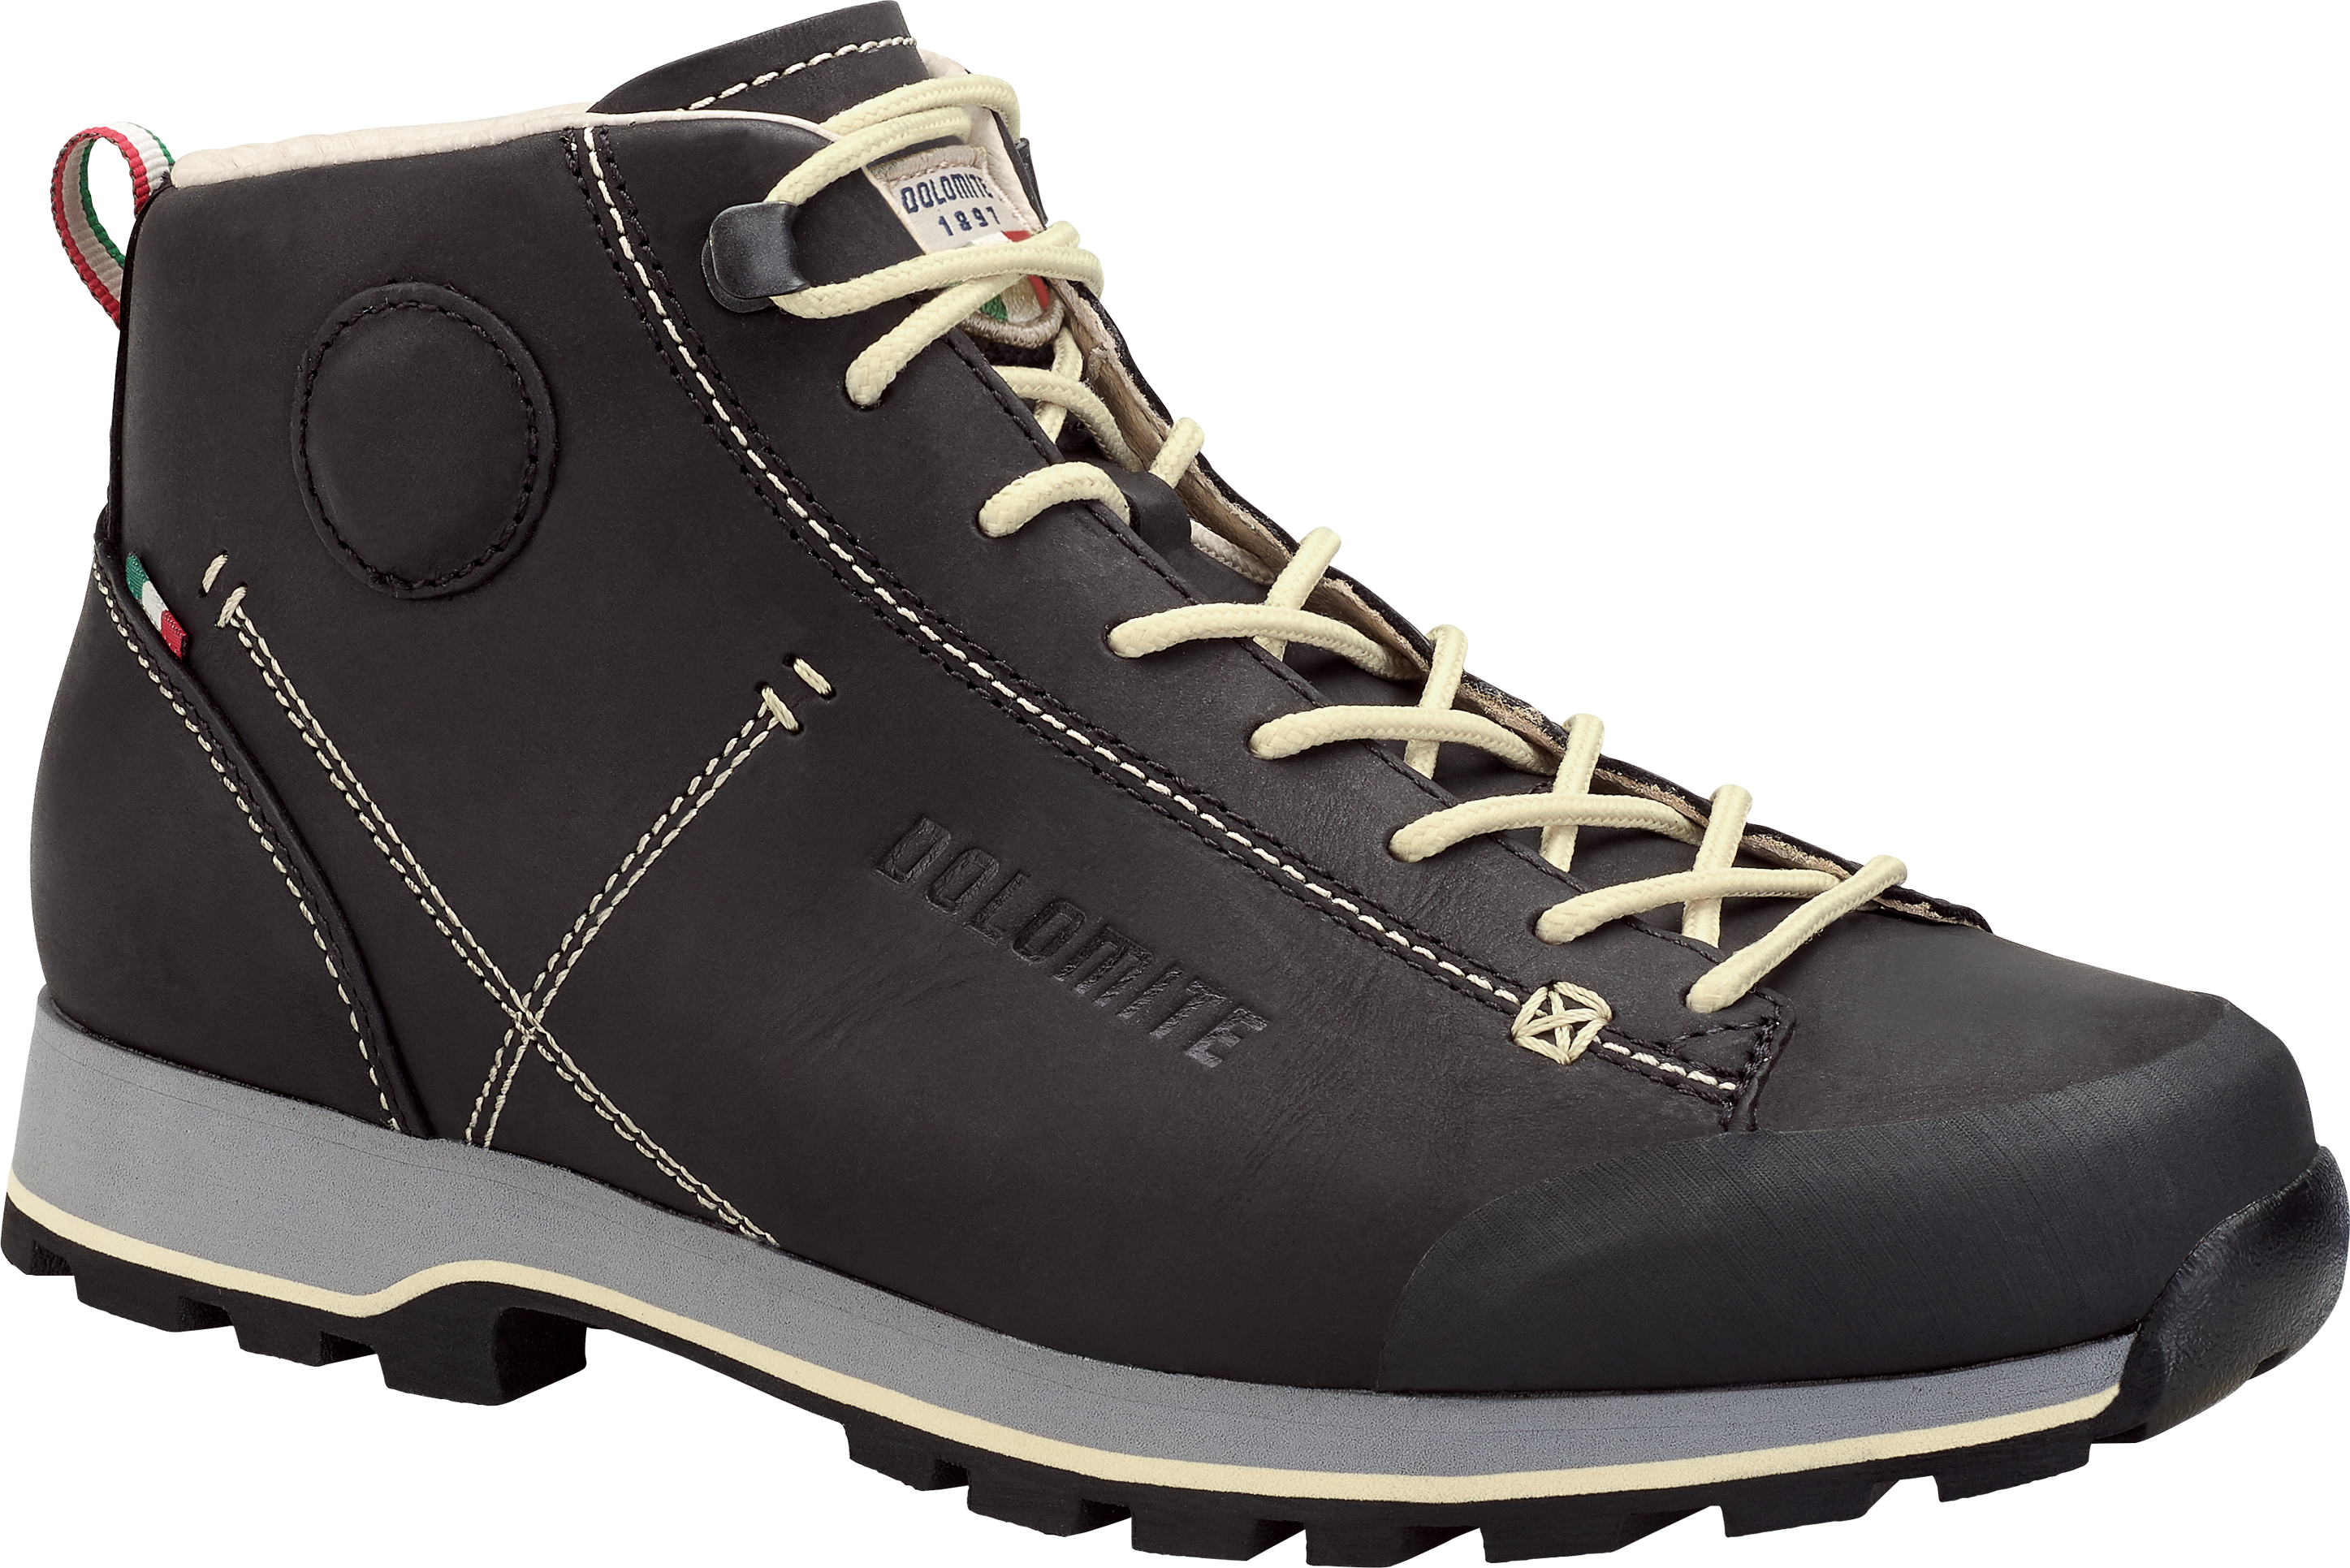 Dolomite Unisex 54 Mid FG Shoe Black